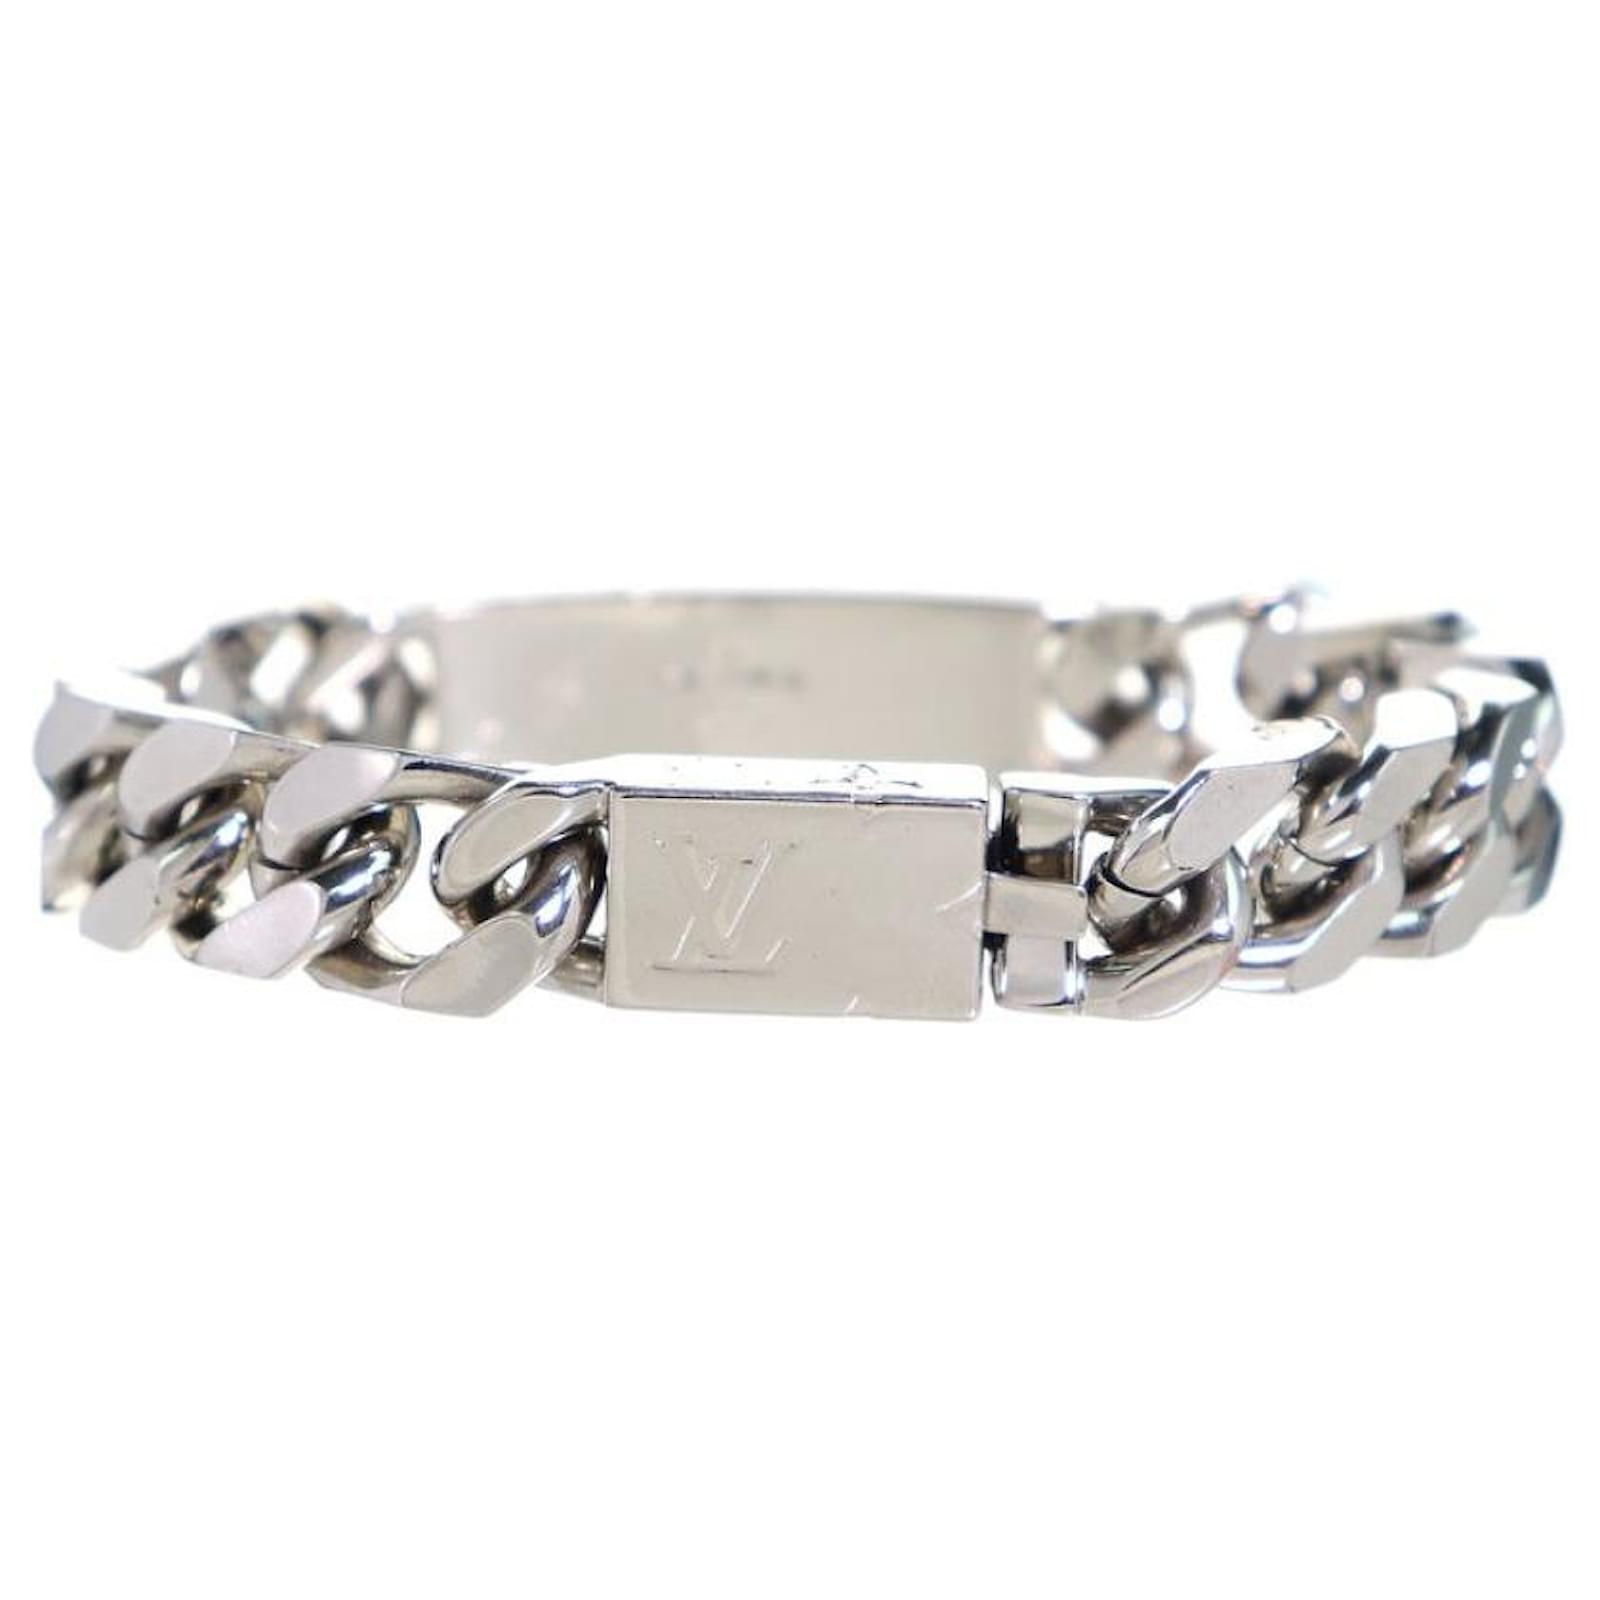 Louis Vuitton Chain bracelet M62486 Men's silver monogram